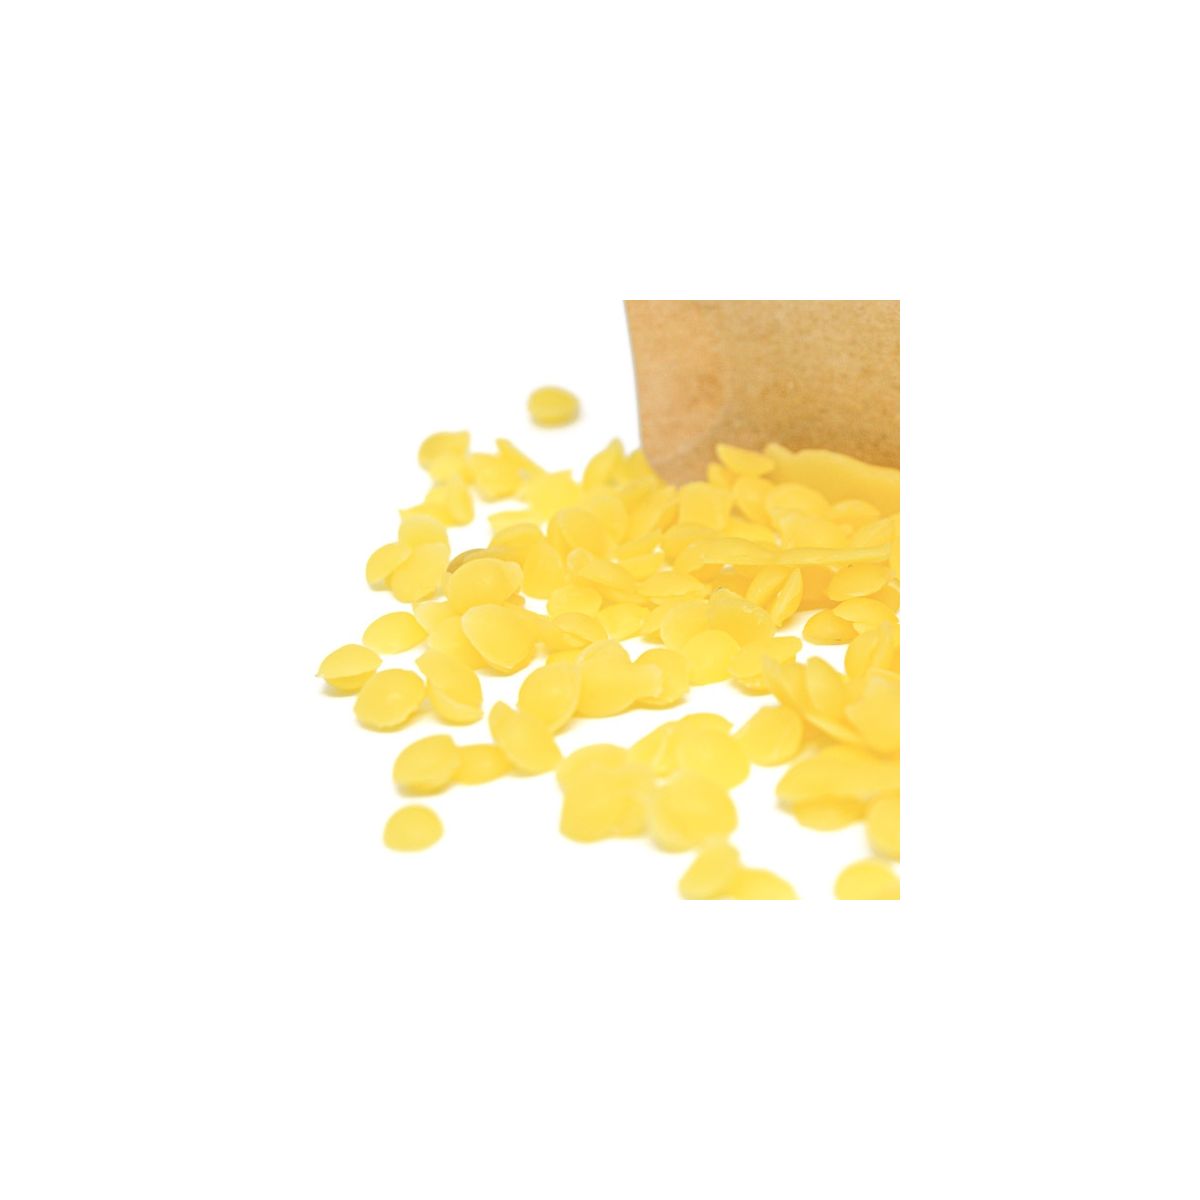 Cera de Abeja natural Amarilla - Comprar - Jabonarium Cosmética Natural